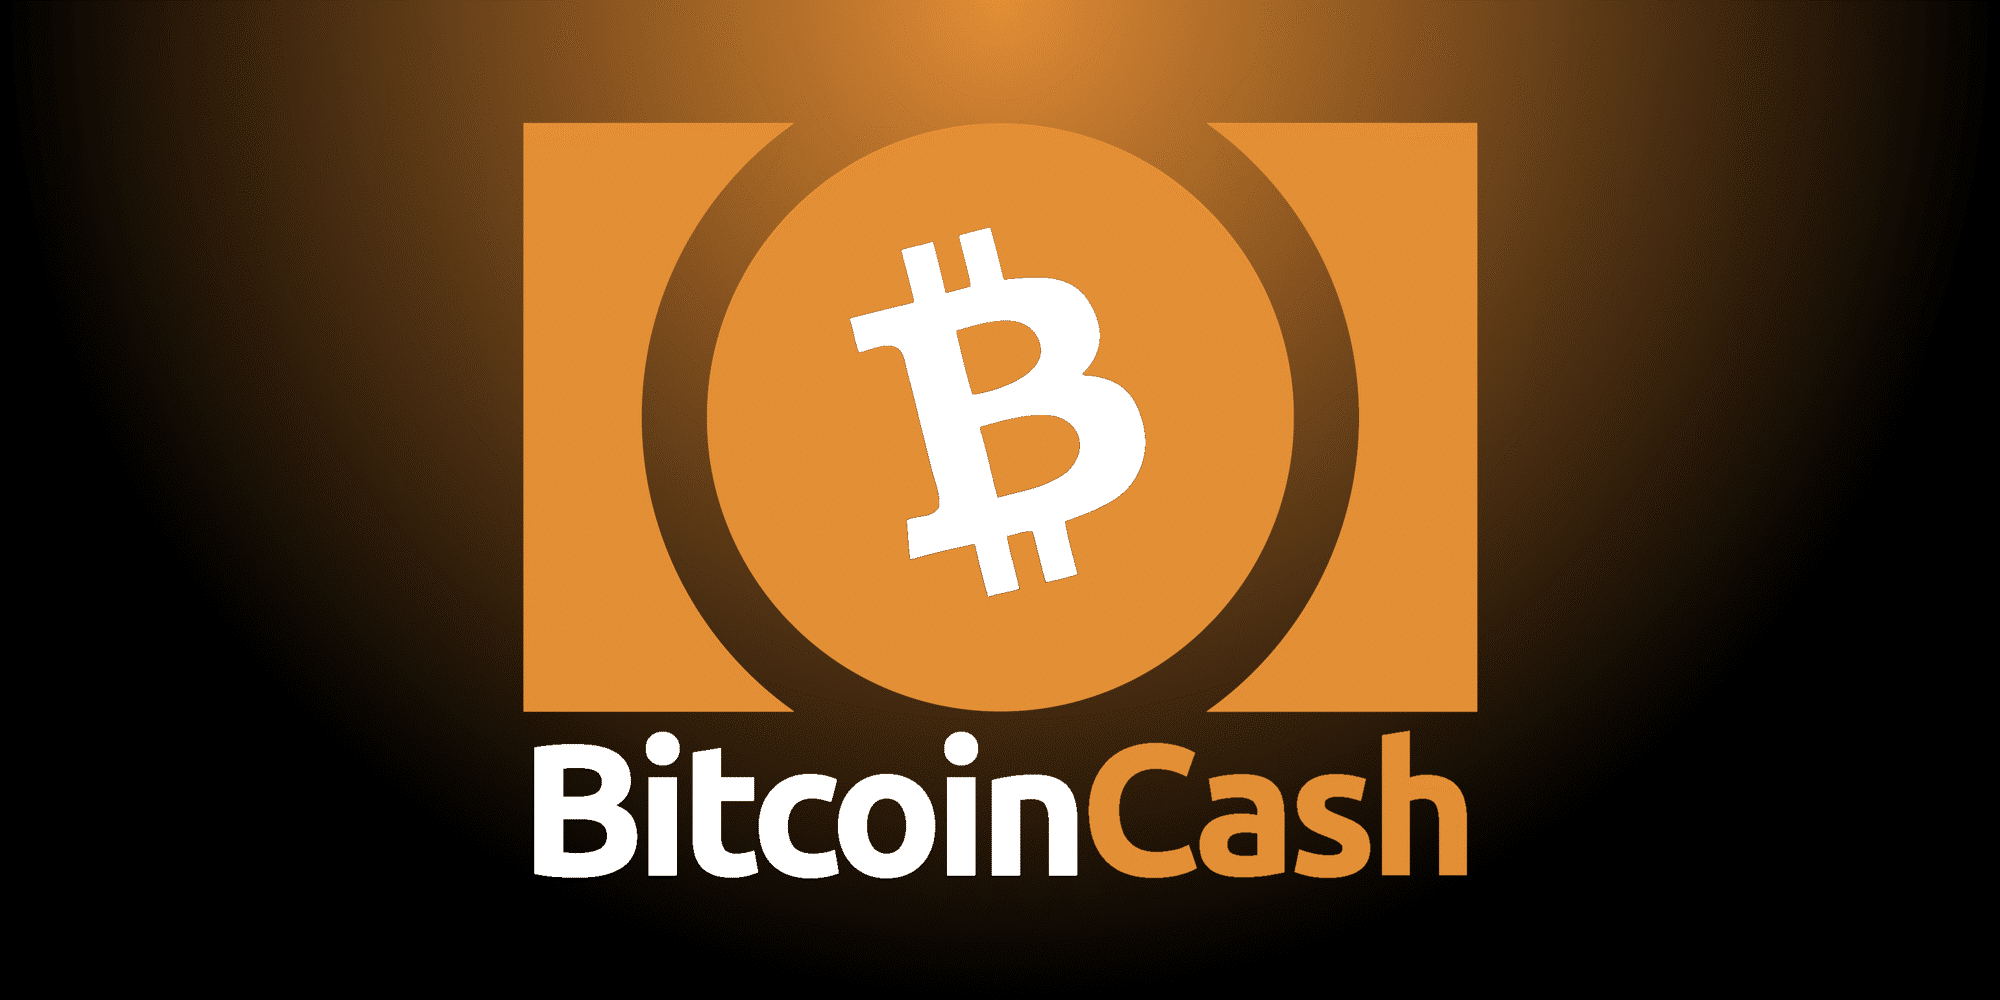 21Shares Bitcoin Cash ETP (21XC ETP) försöker spåra investeringsresultaten för Bitcoin Cash. 21Shares ETP är tillgänglig som aktier på en större börs utan att någon speciell inställning behövs.